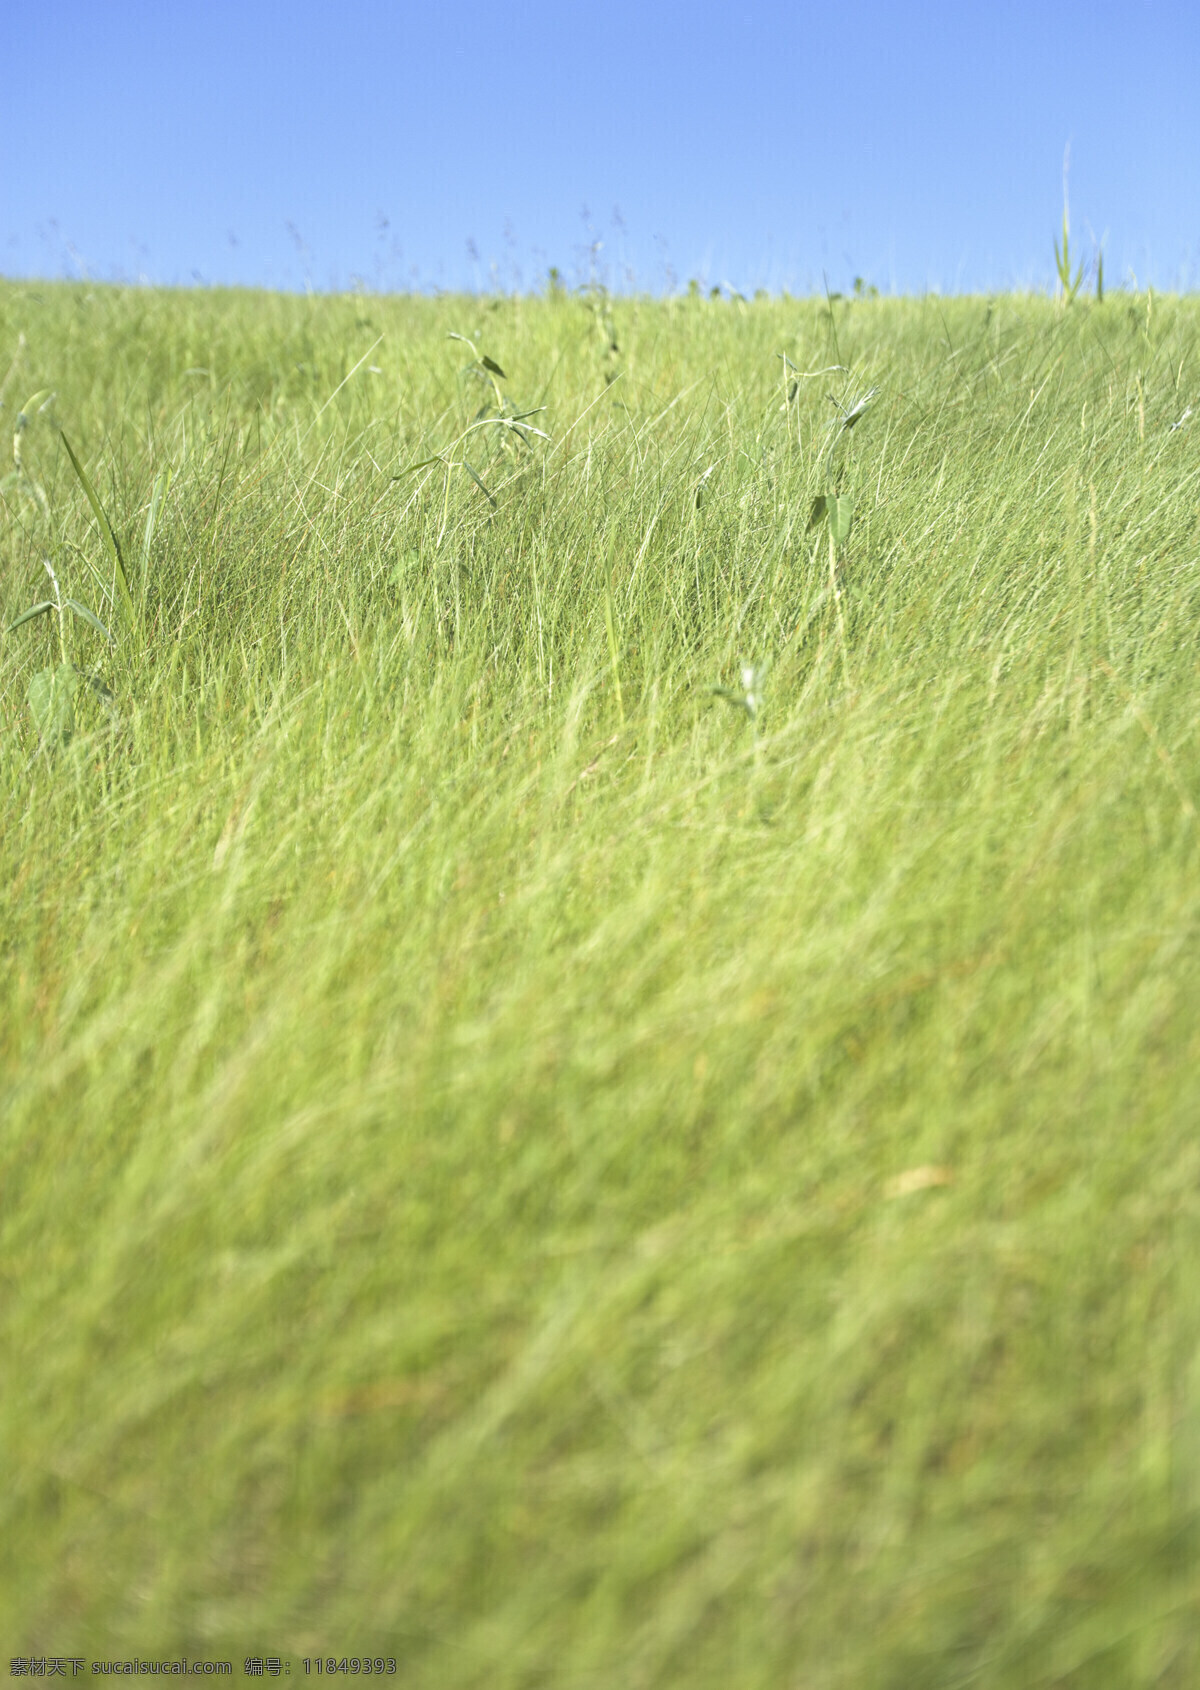 草地图片素材 草原风光 草原 蓝天 湿地 自然风景 自然景观 高清图片 草地 绿色 草原主题 大自然 碧绿的草地 花草树木 生物世界